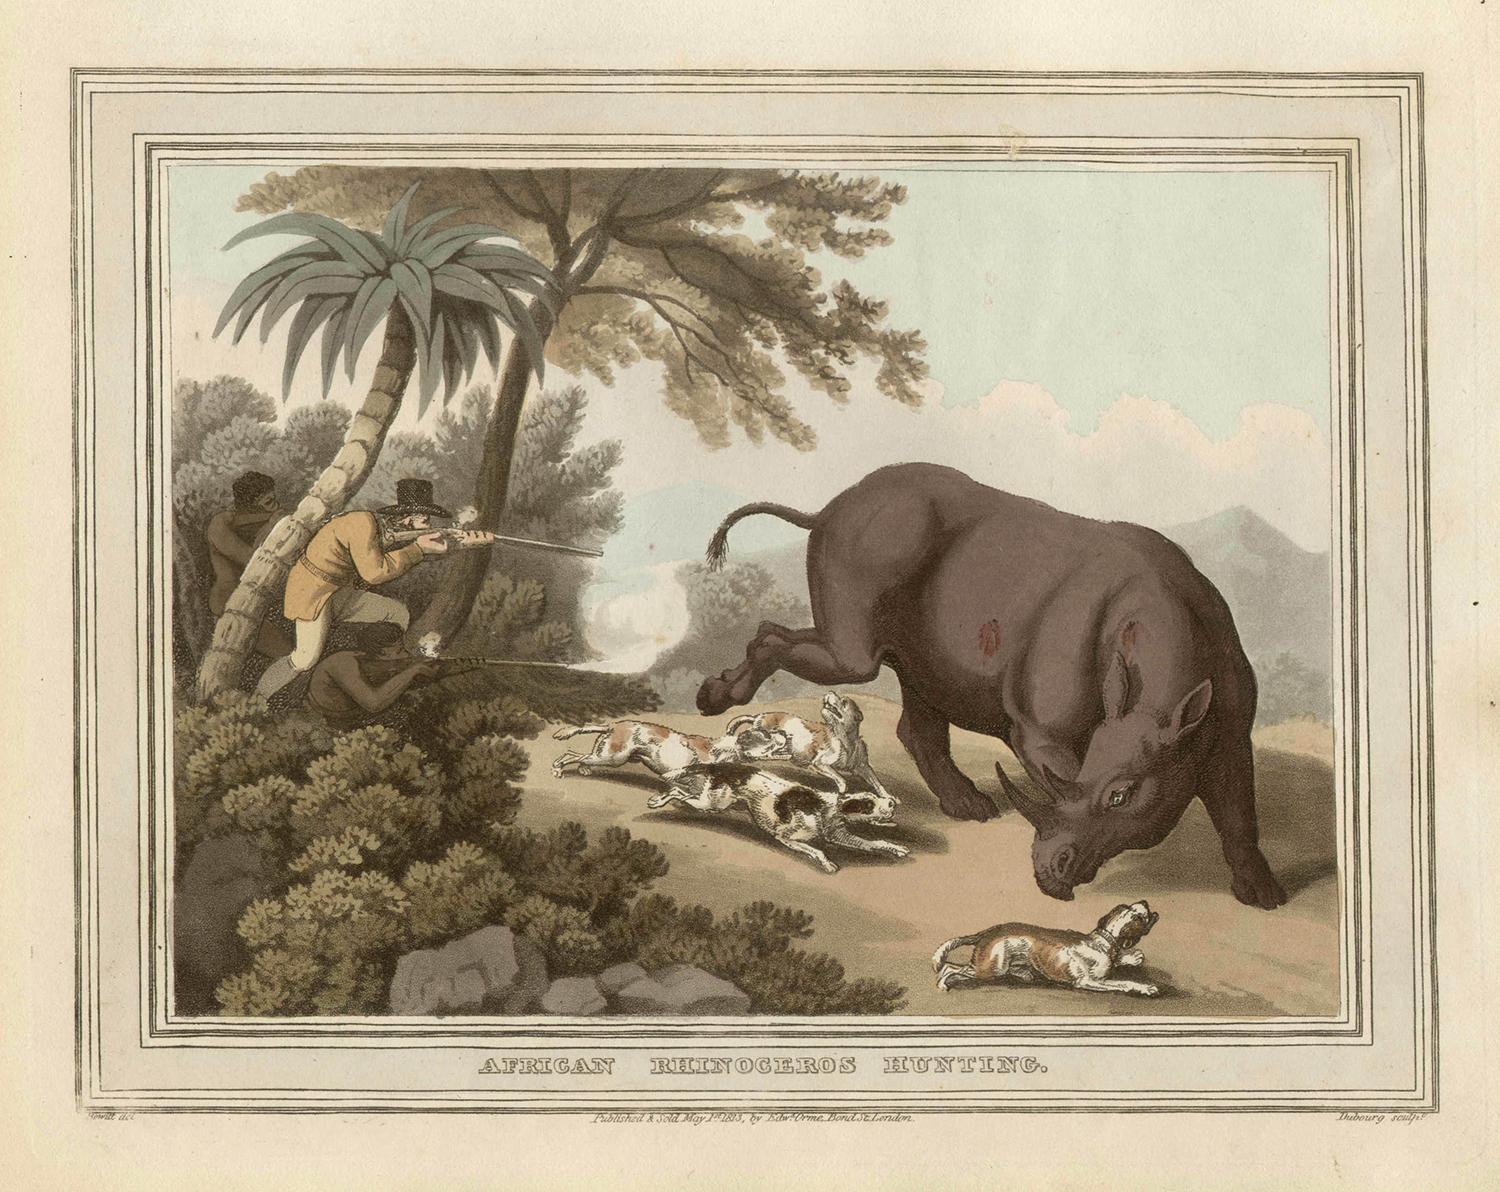 Samuel Howitt Animal Print - African Rhinoceros Hunting, antique African hunting engraving print, 1813